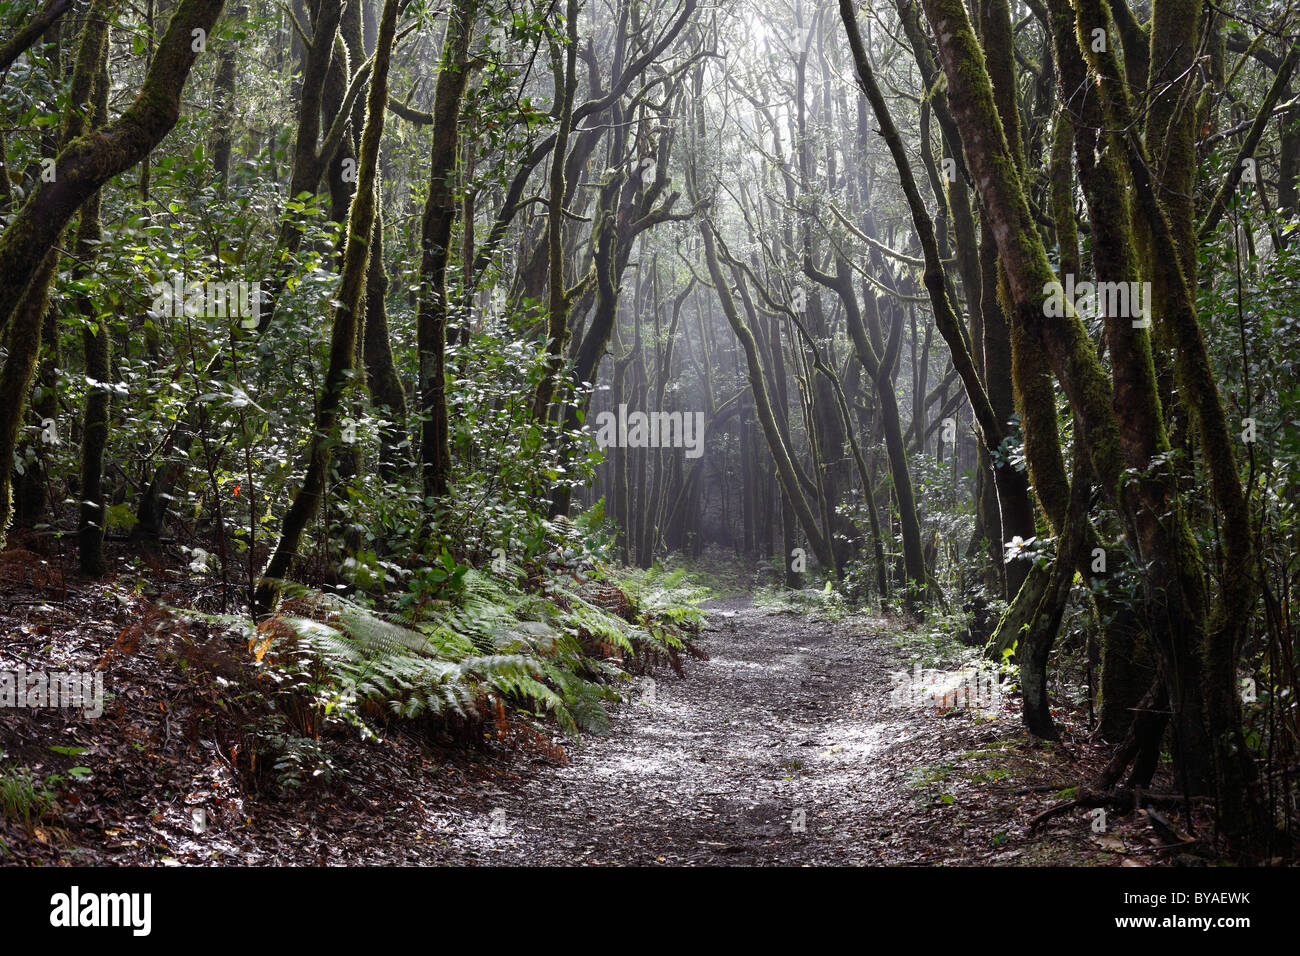 Waldweg in einem Wald von Lorbeerbäumen, Nationalpark Garajonay, Insel La Gomera, Kanarische Inseln, Spanien, Europa Stockfoto